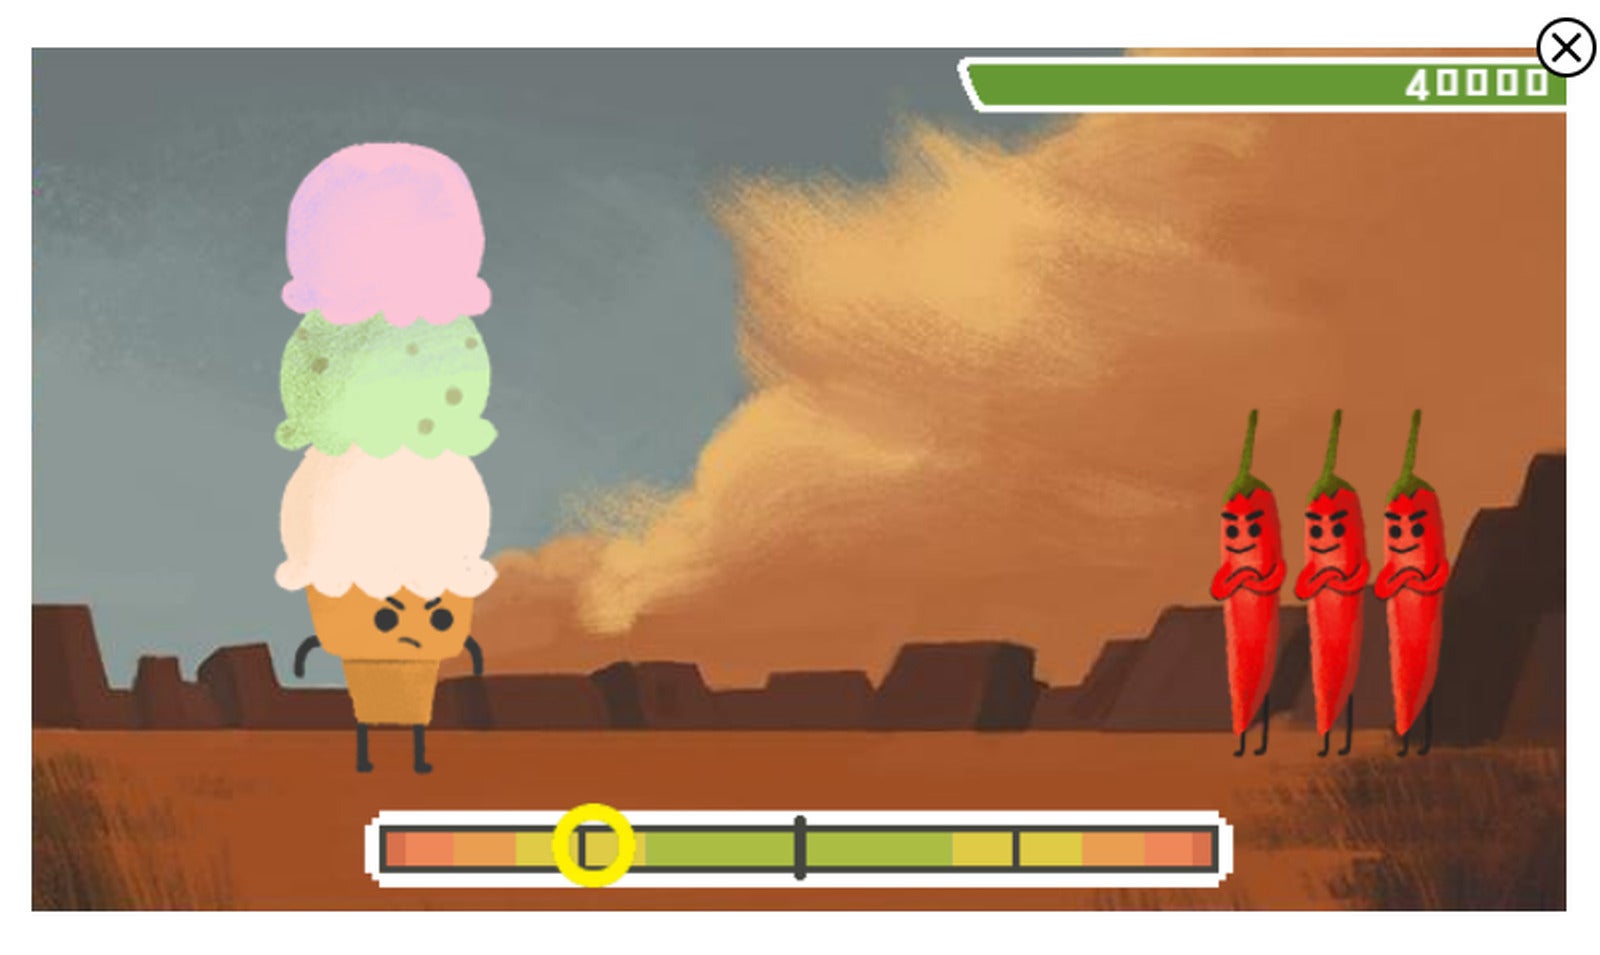 Google Doodle celebra jogos Olímpicos com JRPG de desporto